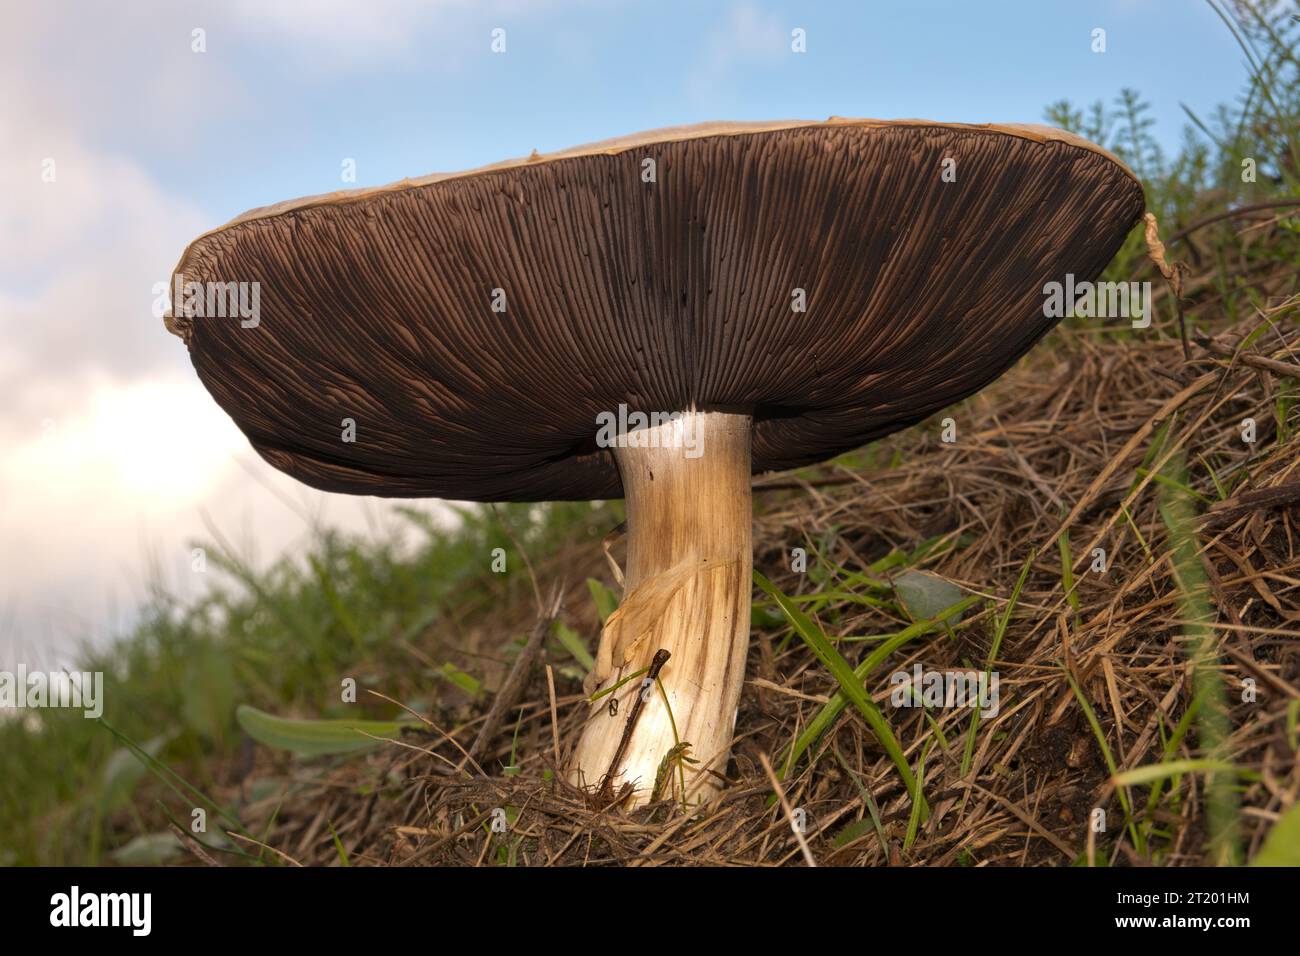 Fungo da campo, un grande fungo commestibile con cappuccio bianco, visto da un punto di vista basso Foto Stock